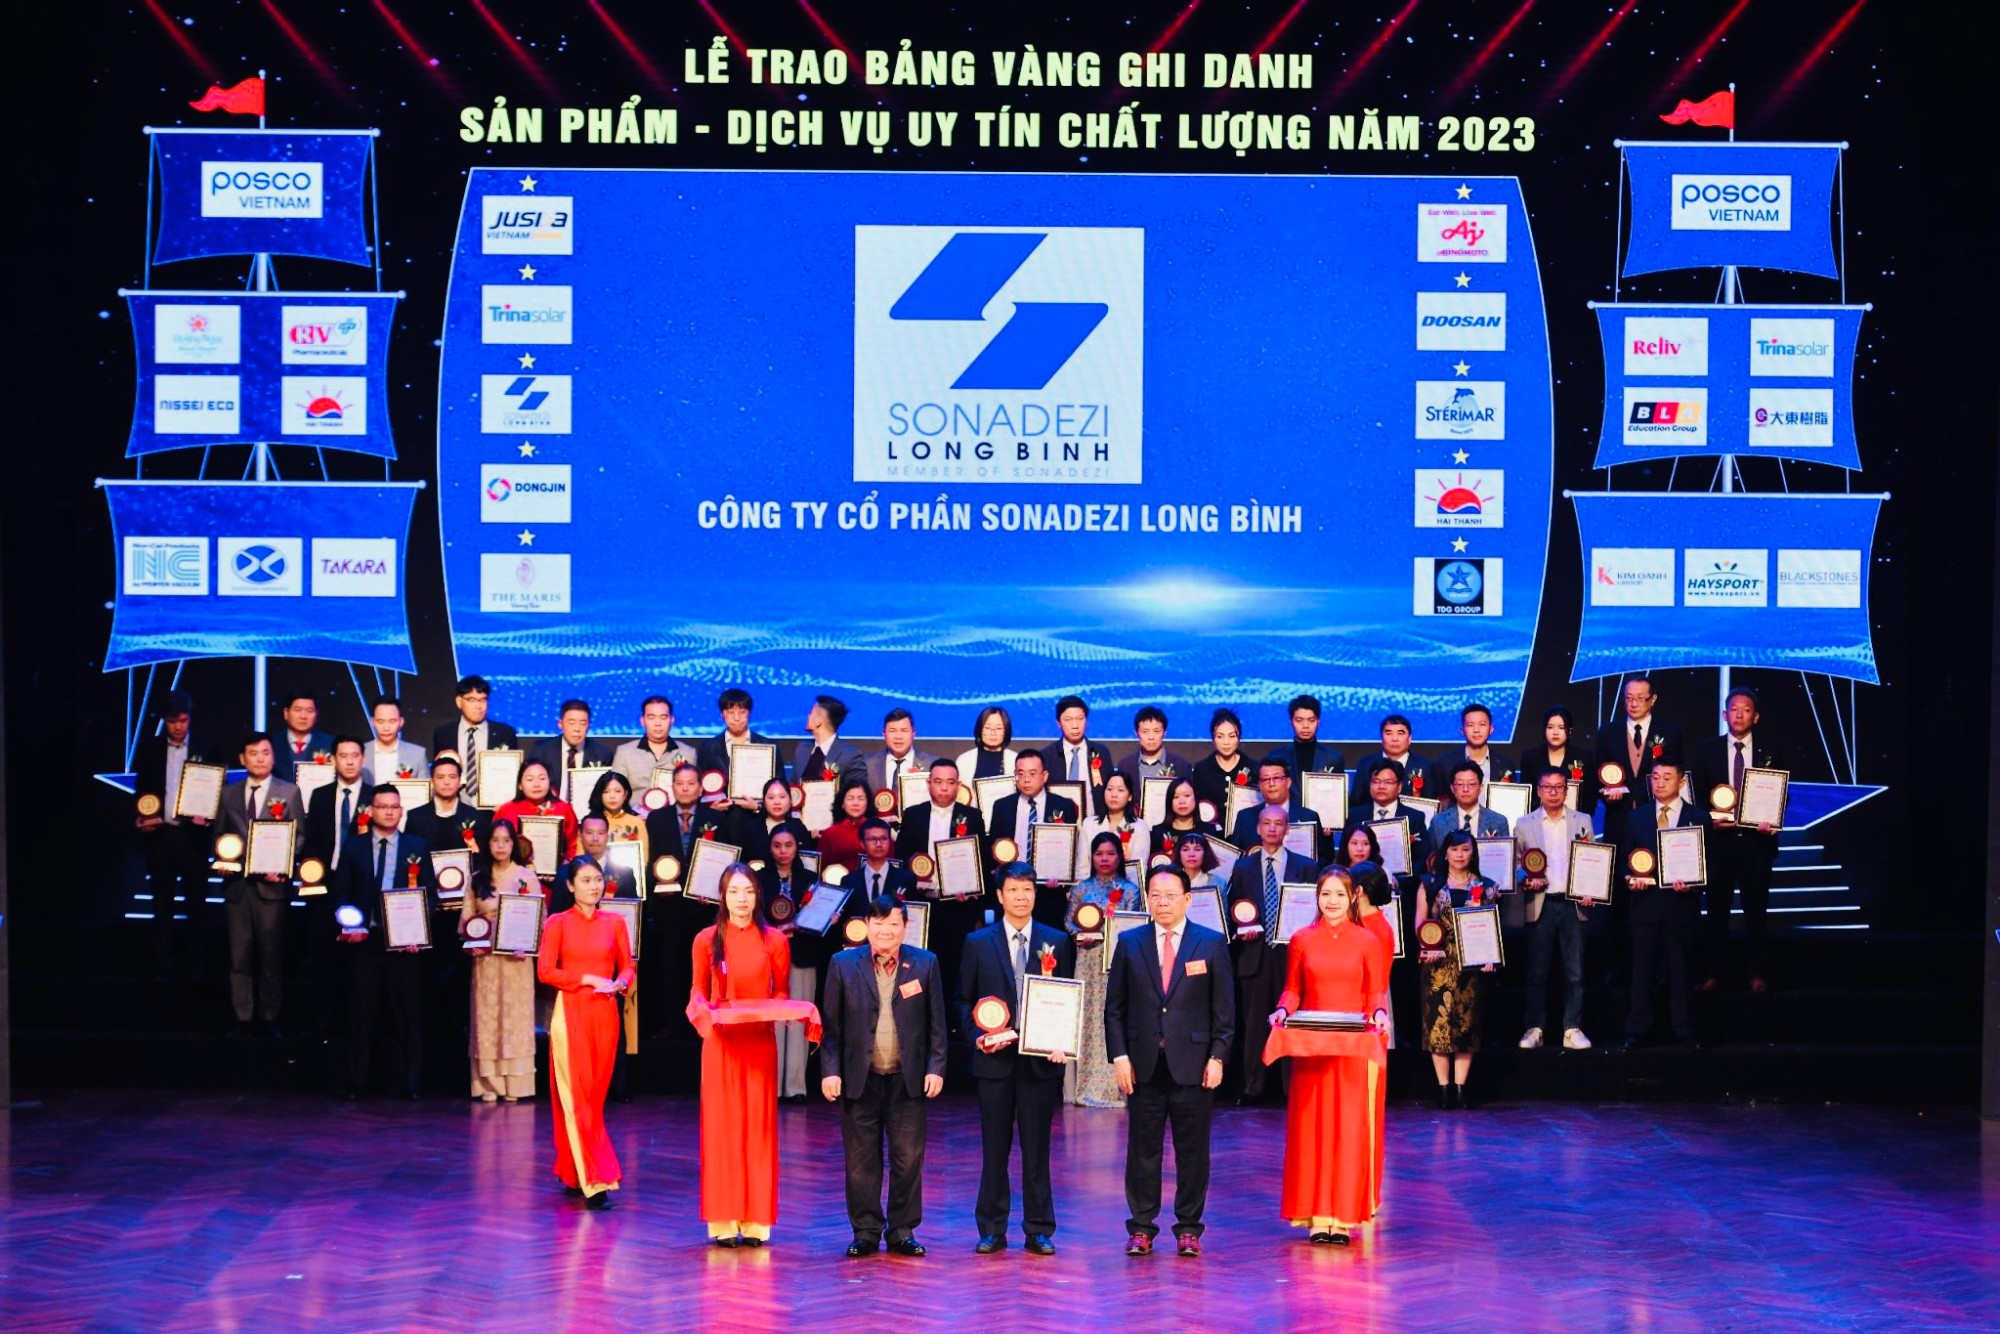 Sonadezi Long Bình nhận giải Top 10 Dịch vụ uy tín chất lượng năm 2023 và vinh danh Doanh nhân tiêu biểu năm 2023